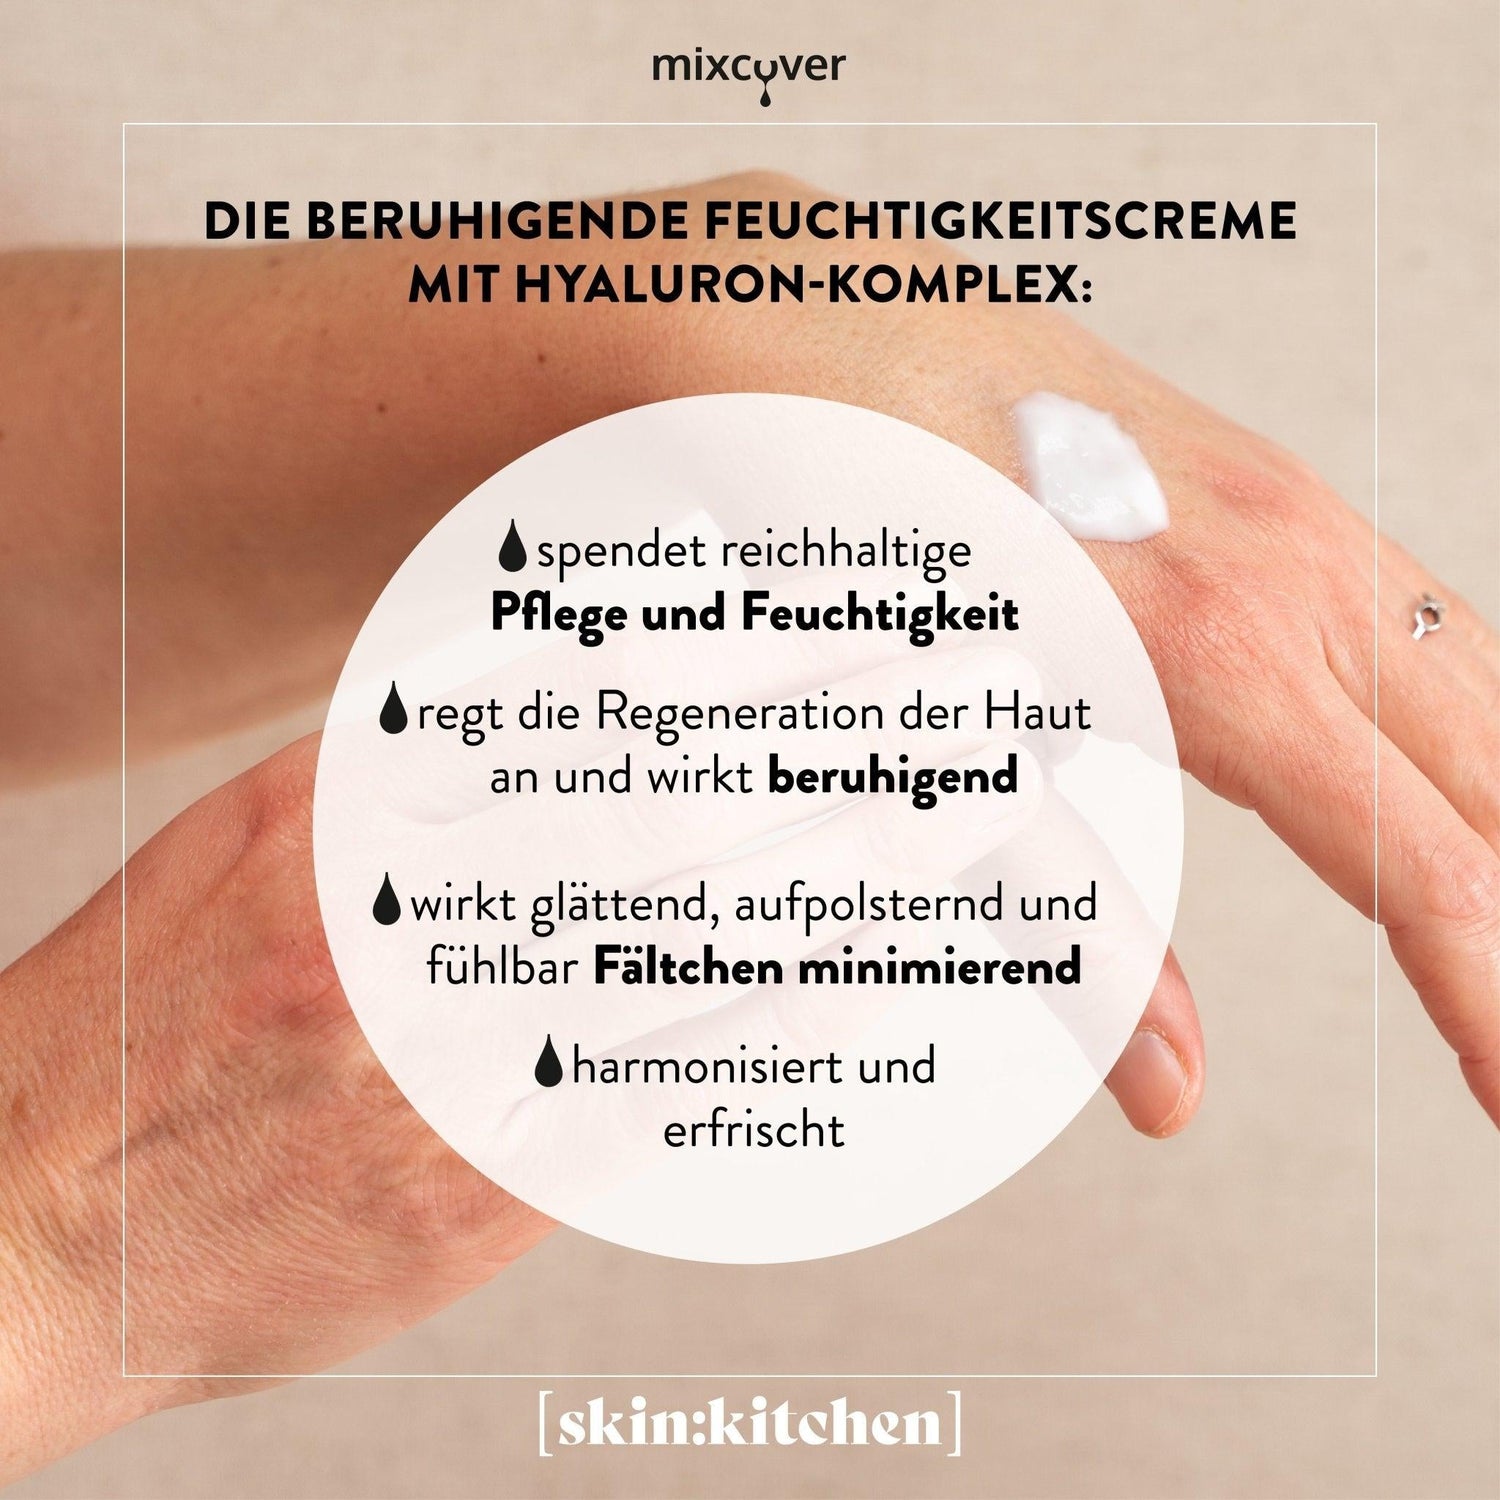 skin:kitchen DIY Set Naturkosmetik Hyaluron Gesichtscreme für Küchenmaschinen wie Thermomix oder Monsieur Cuisine Connect, Monsieur Cuisine Smart - Mixcover - Mixcover